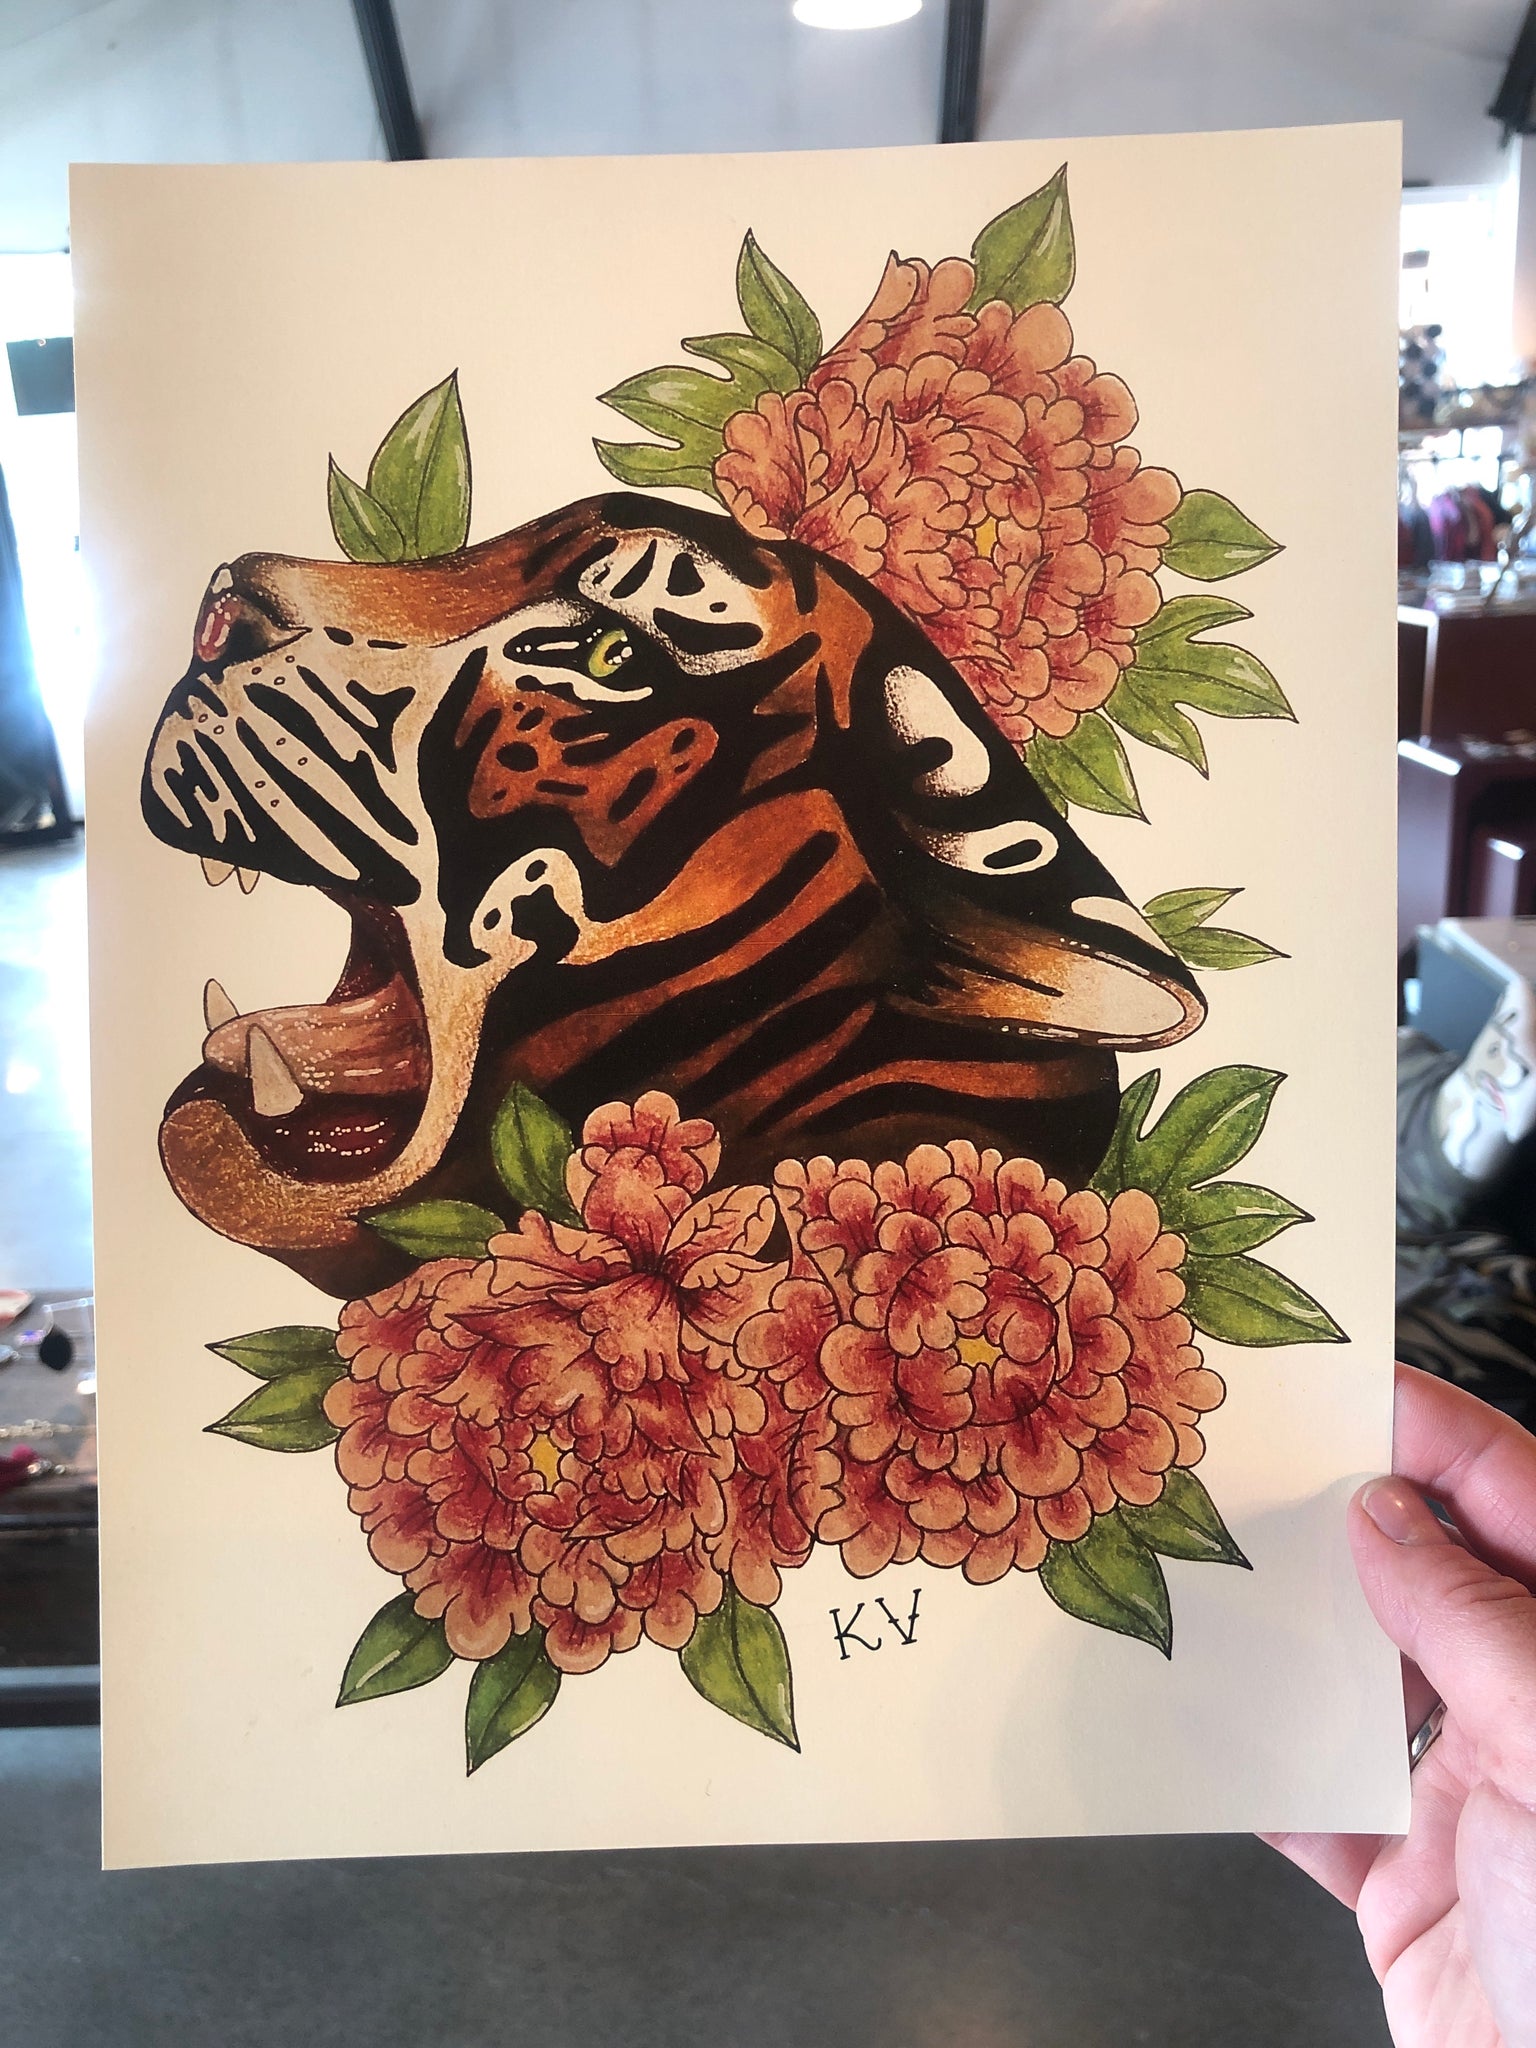 Tiger & Roses Print by Katelyn VanLandingham